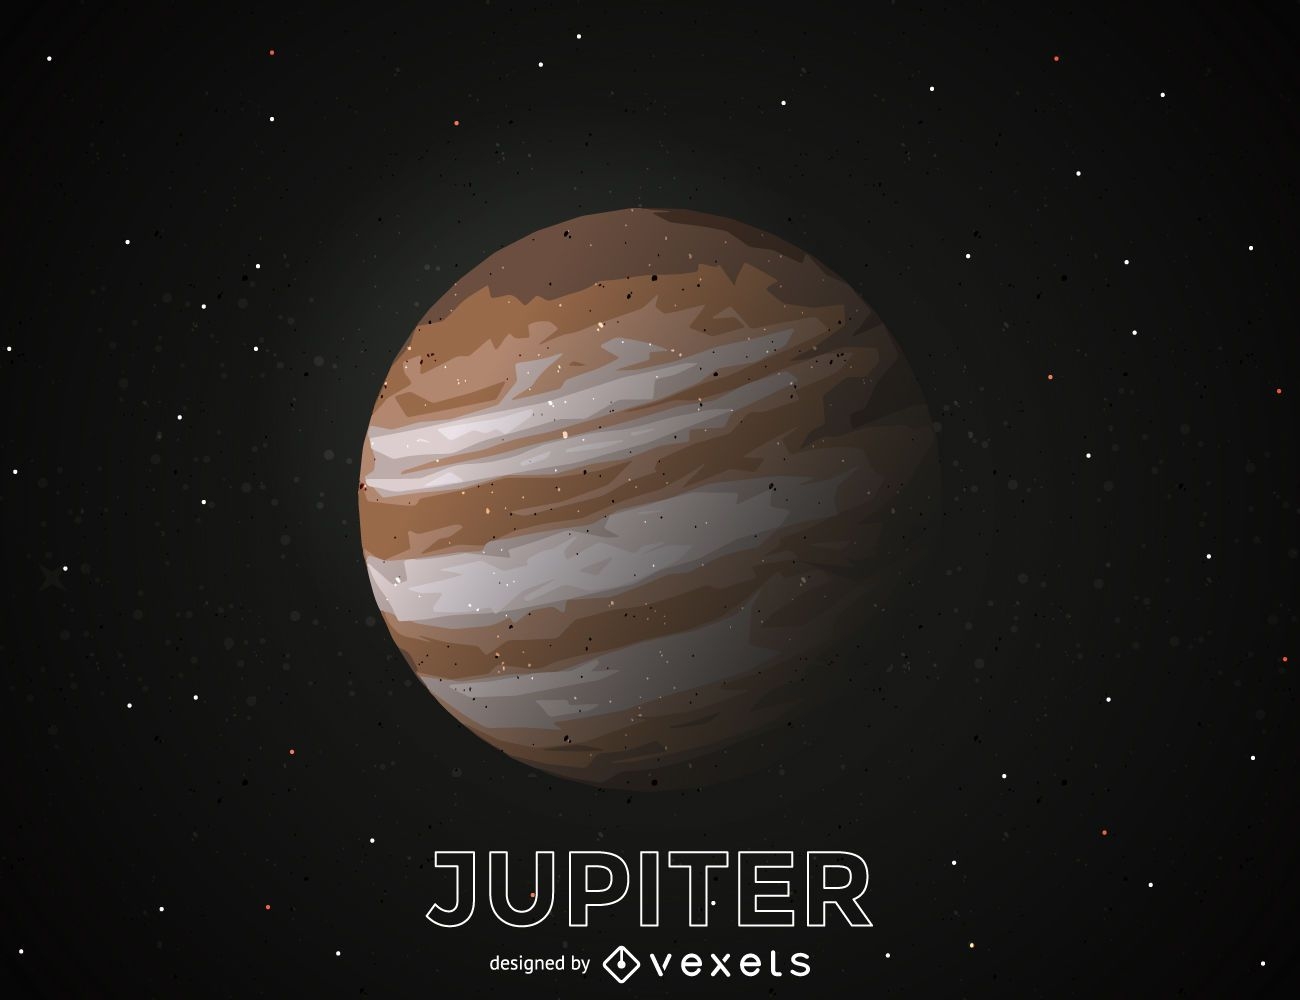 Jupiter planet cutout illustration